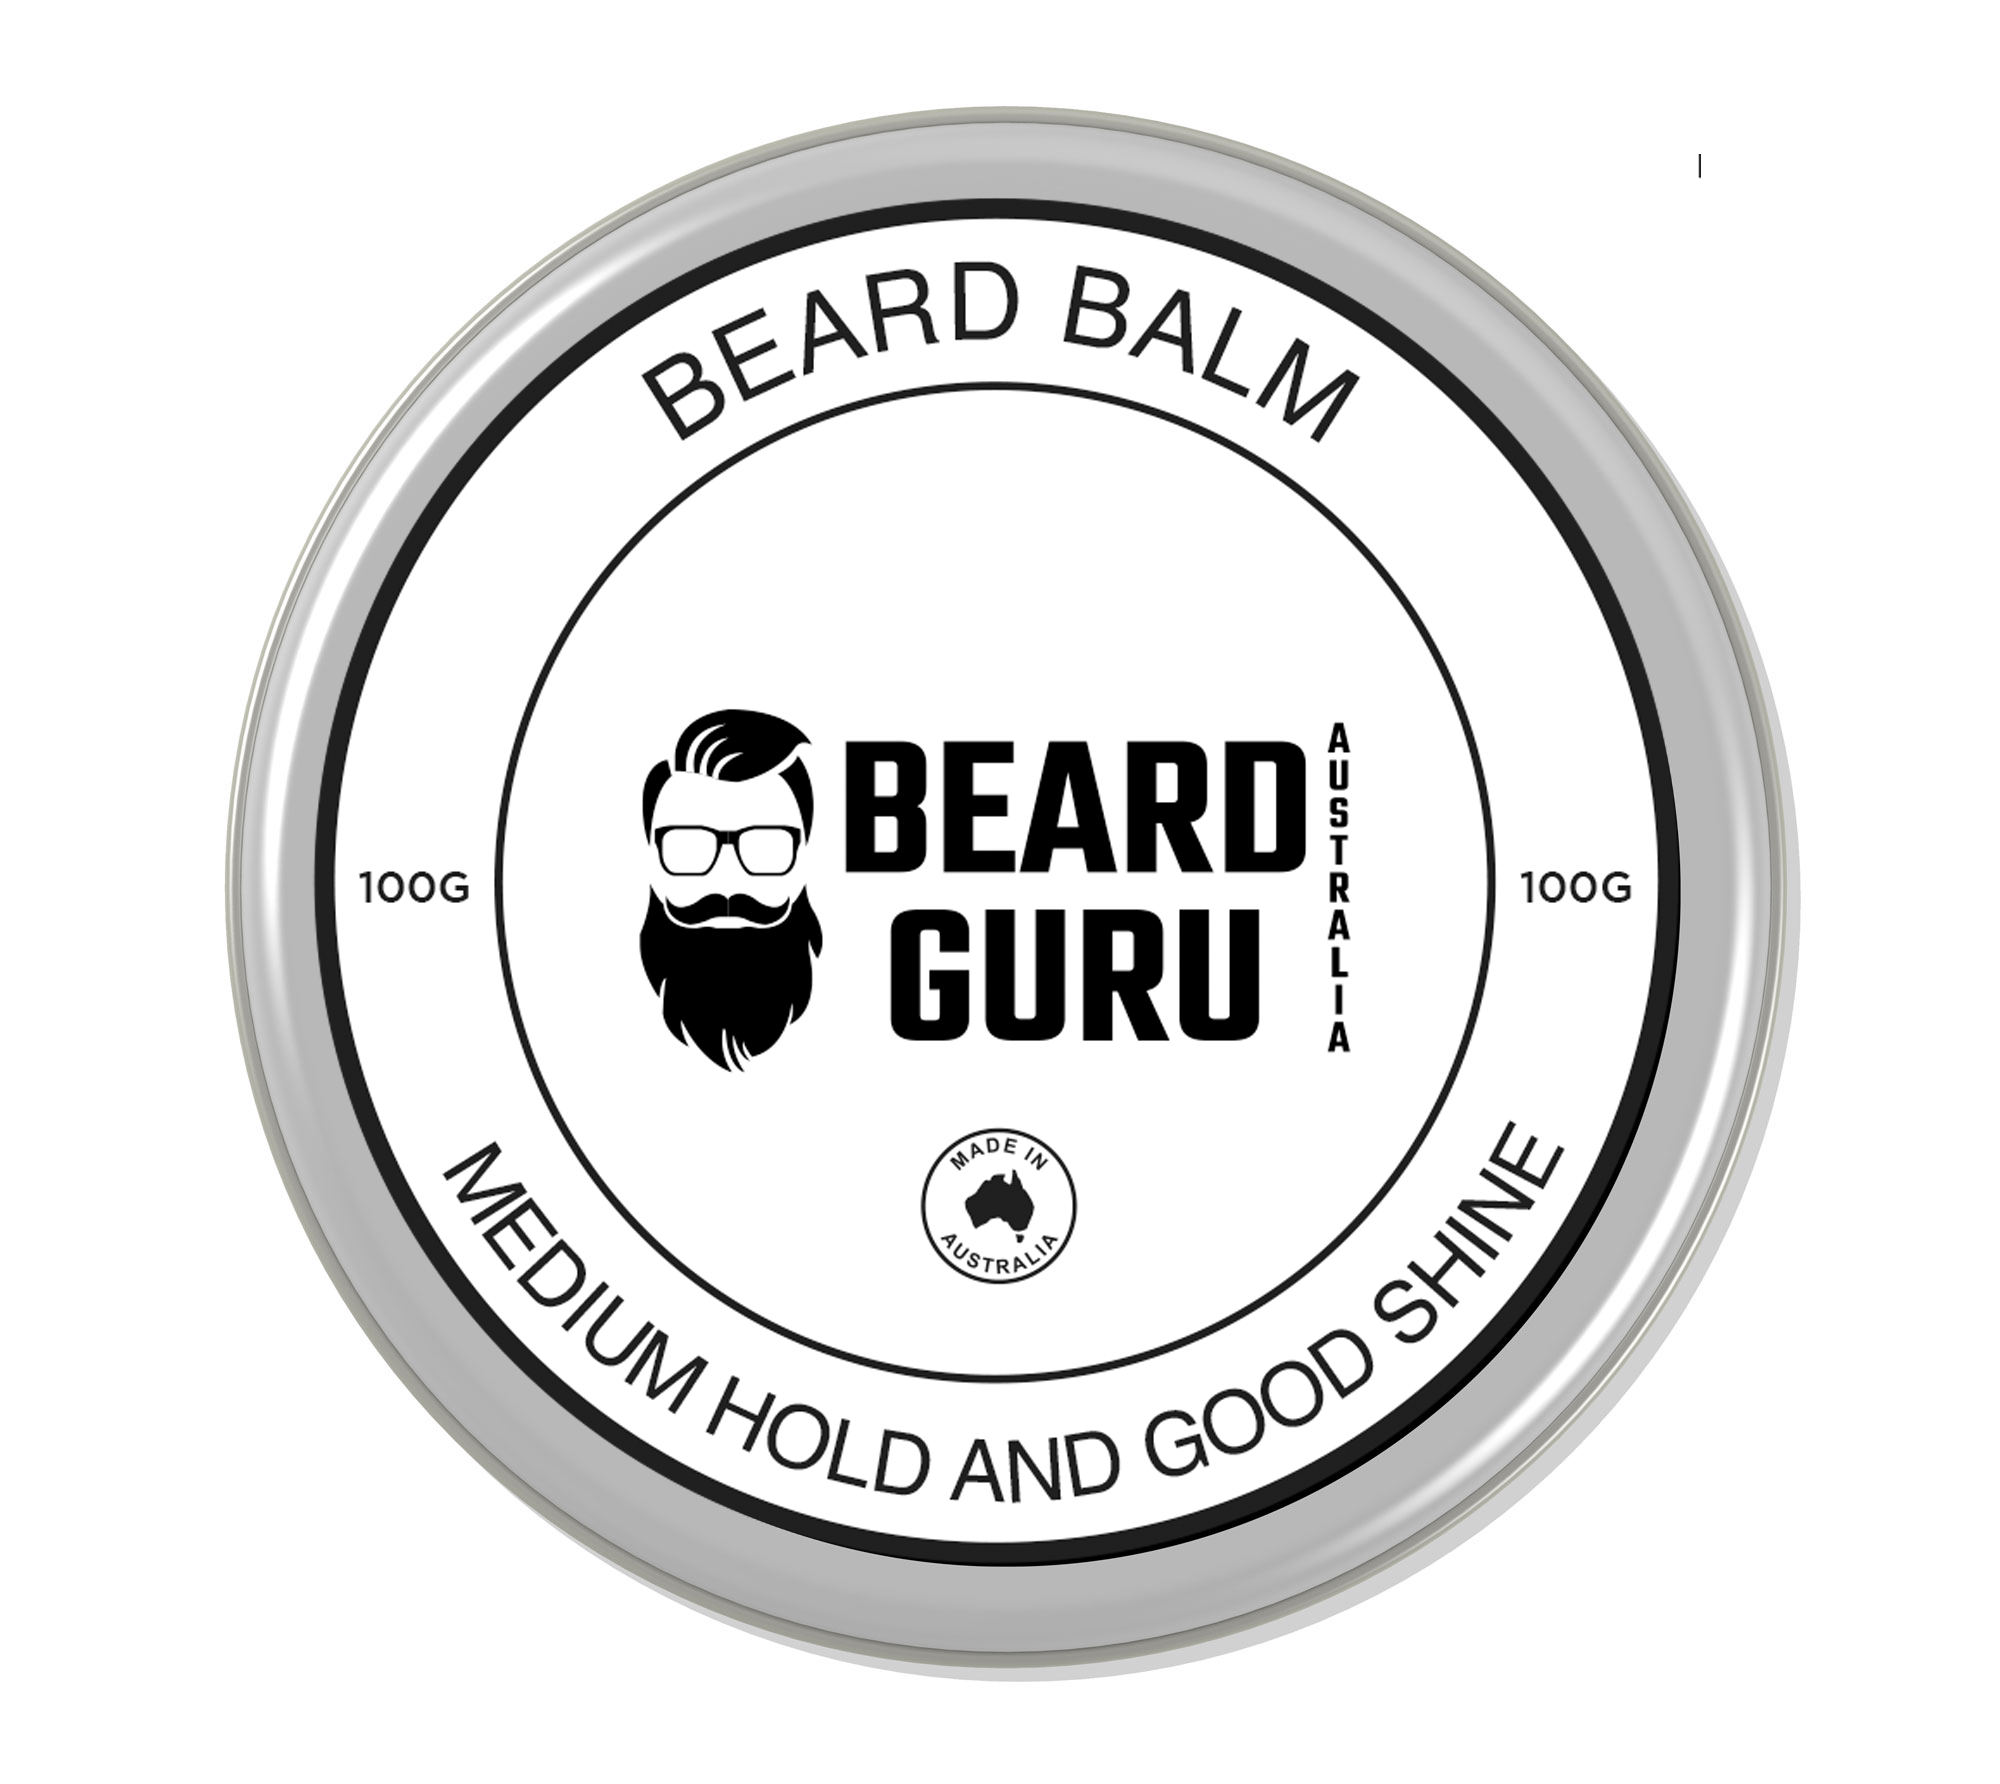 Beard Balm by Beard Guru Australia - 100g